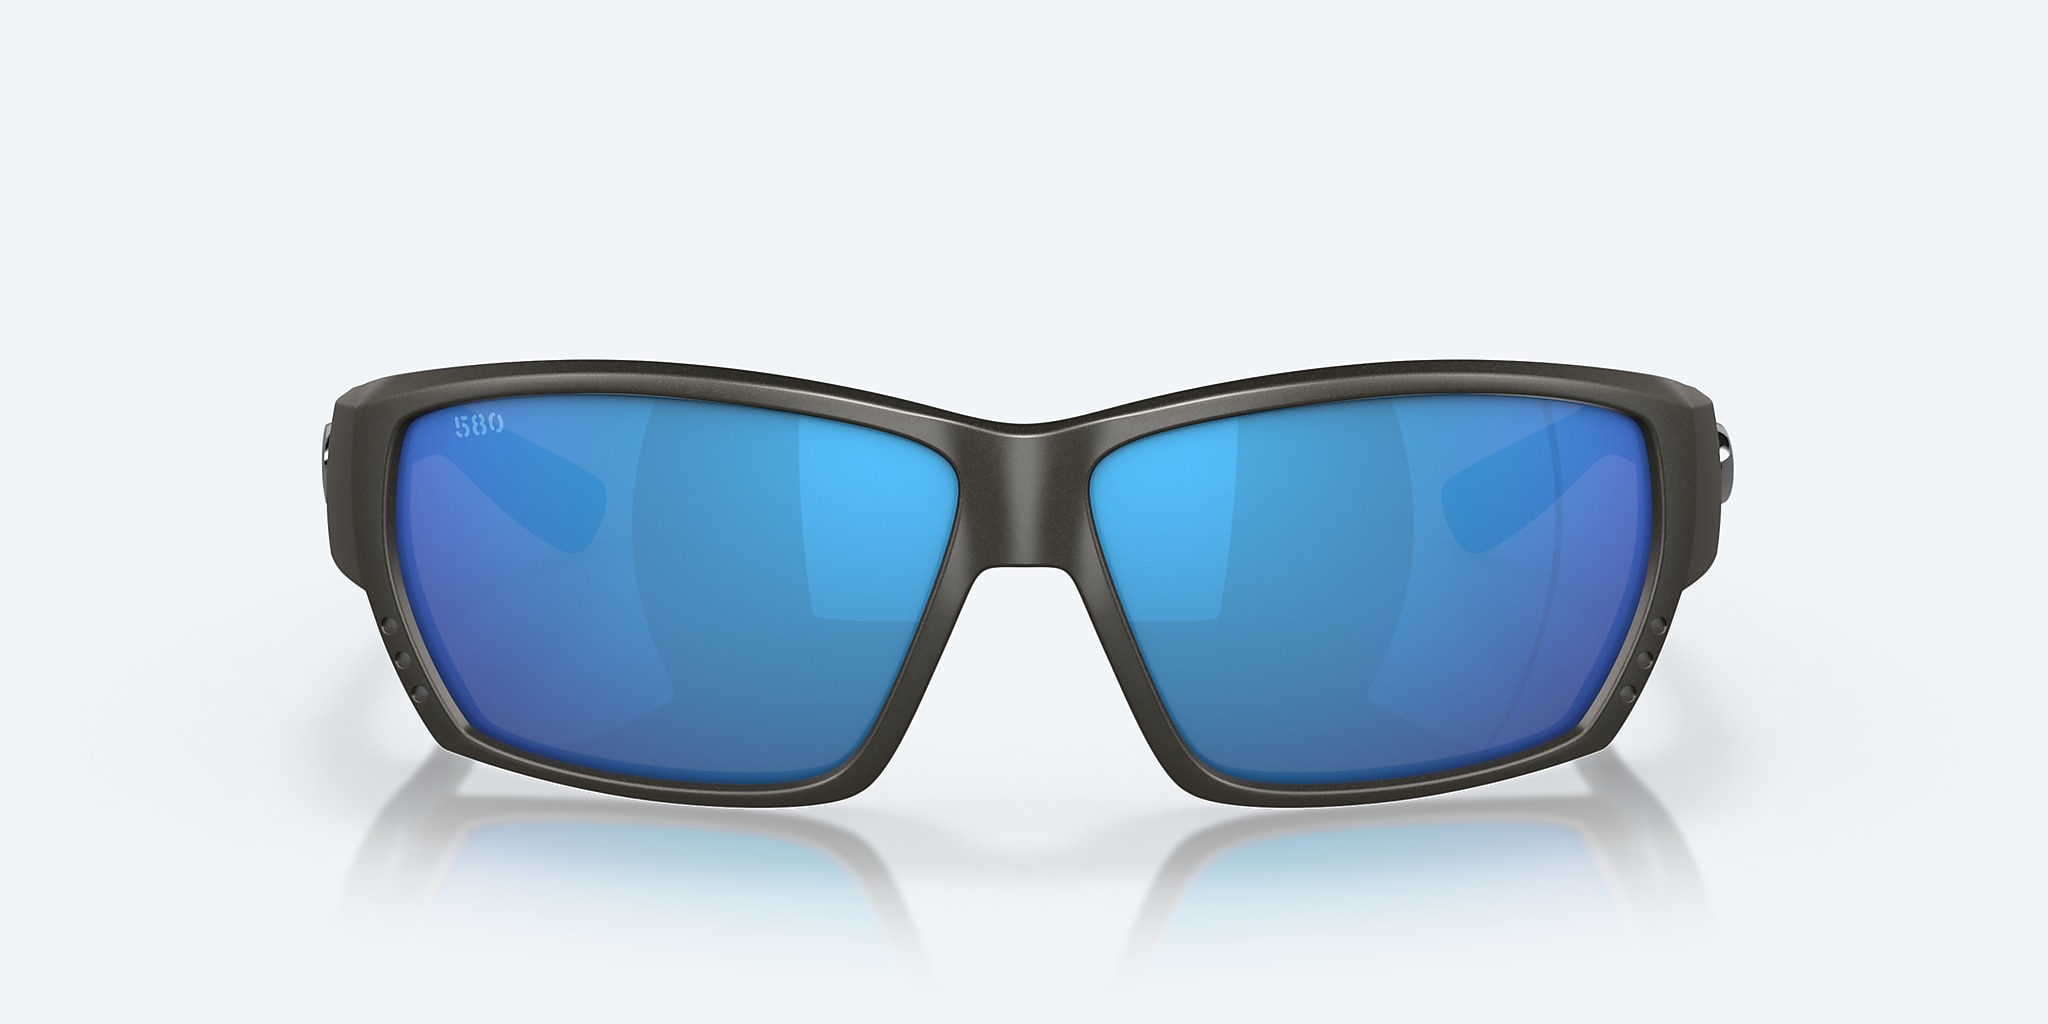 Tuna Alley Polarized Sunglasses in Blue Mirror